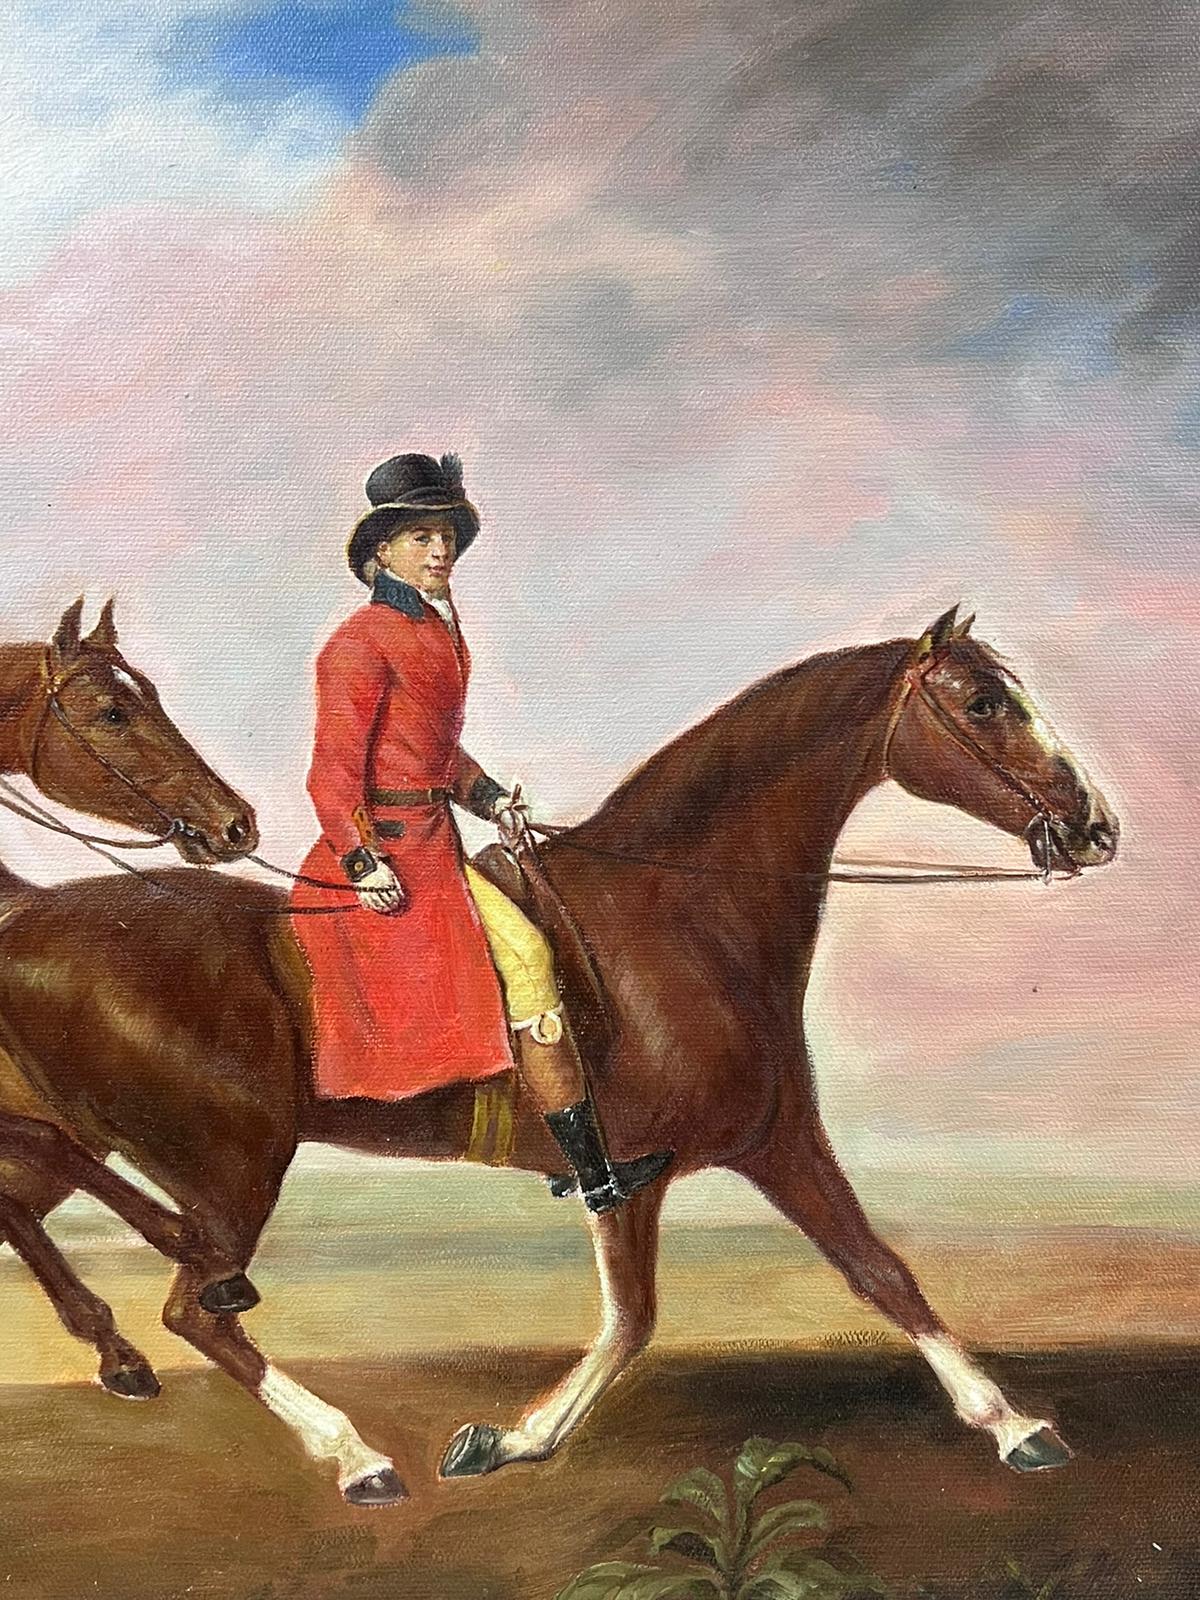 Großes Ölgemälde, Sportkunst, Ölgemälde Reiter auf Pferd mit einem anderen Pferd, gerahmt (Englische Schule), Painting, von European Artist